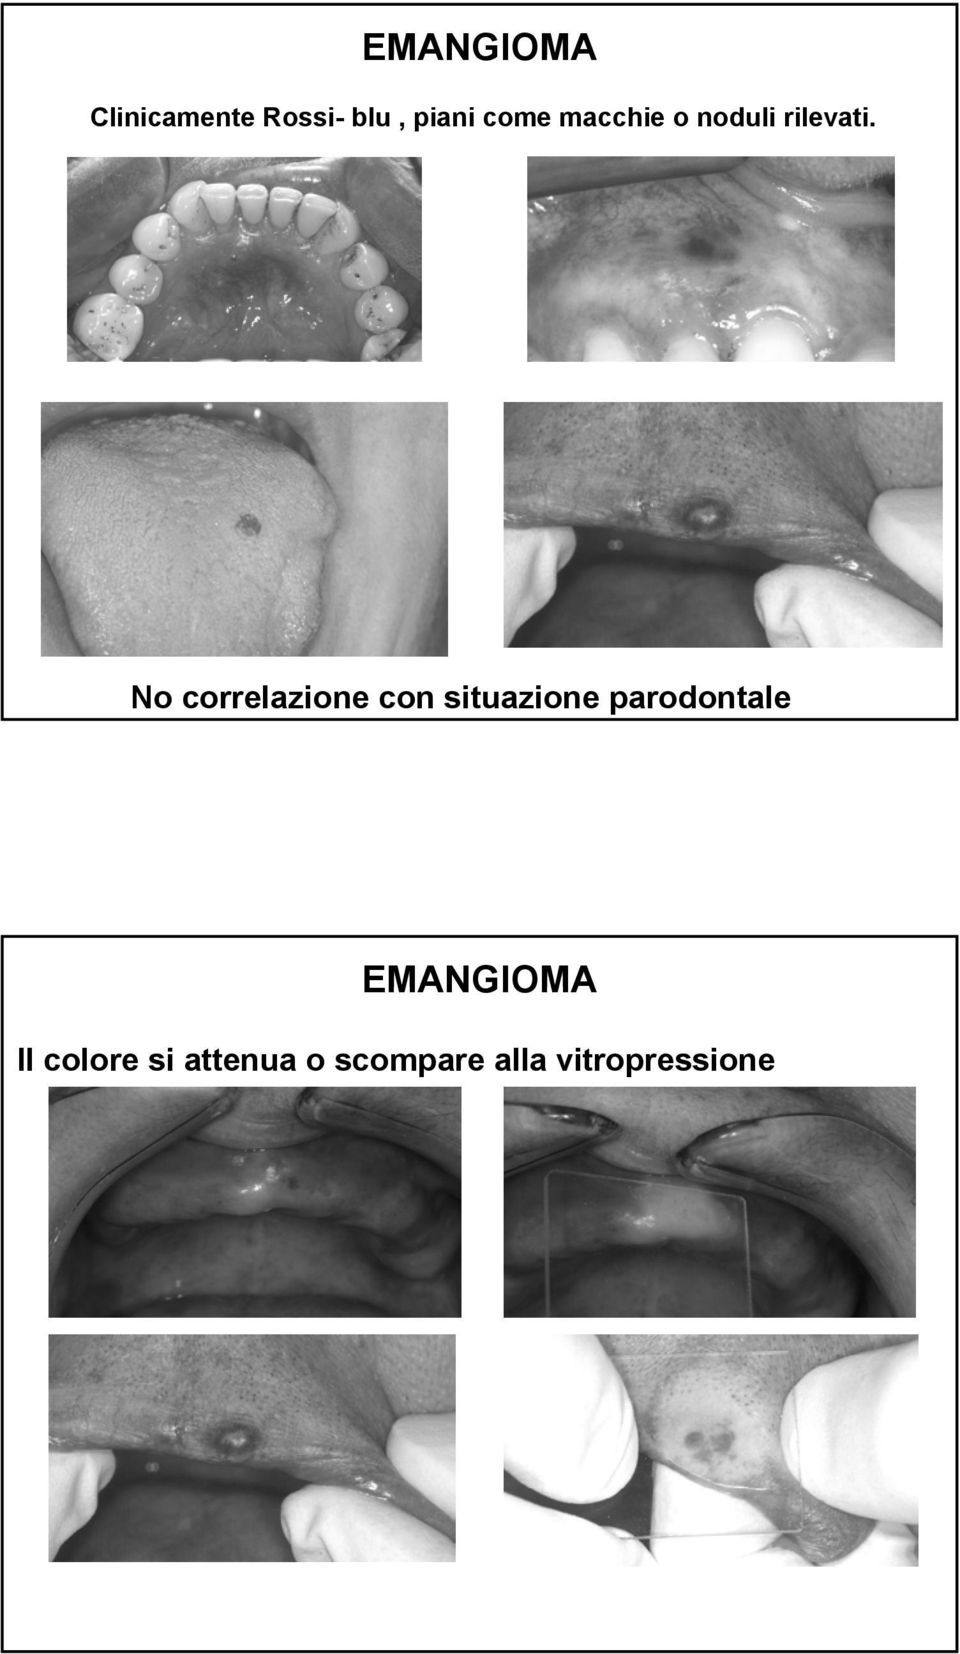 No correlazione con situazione parodontale